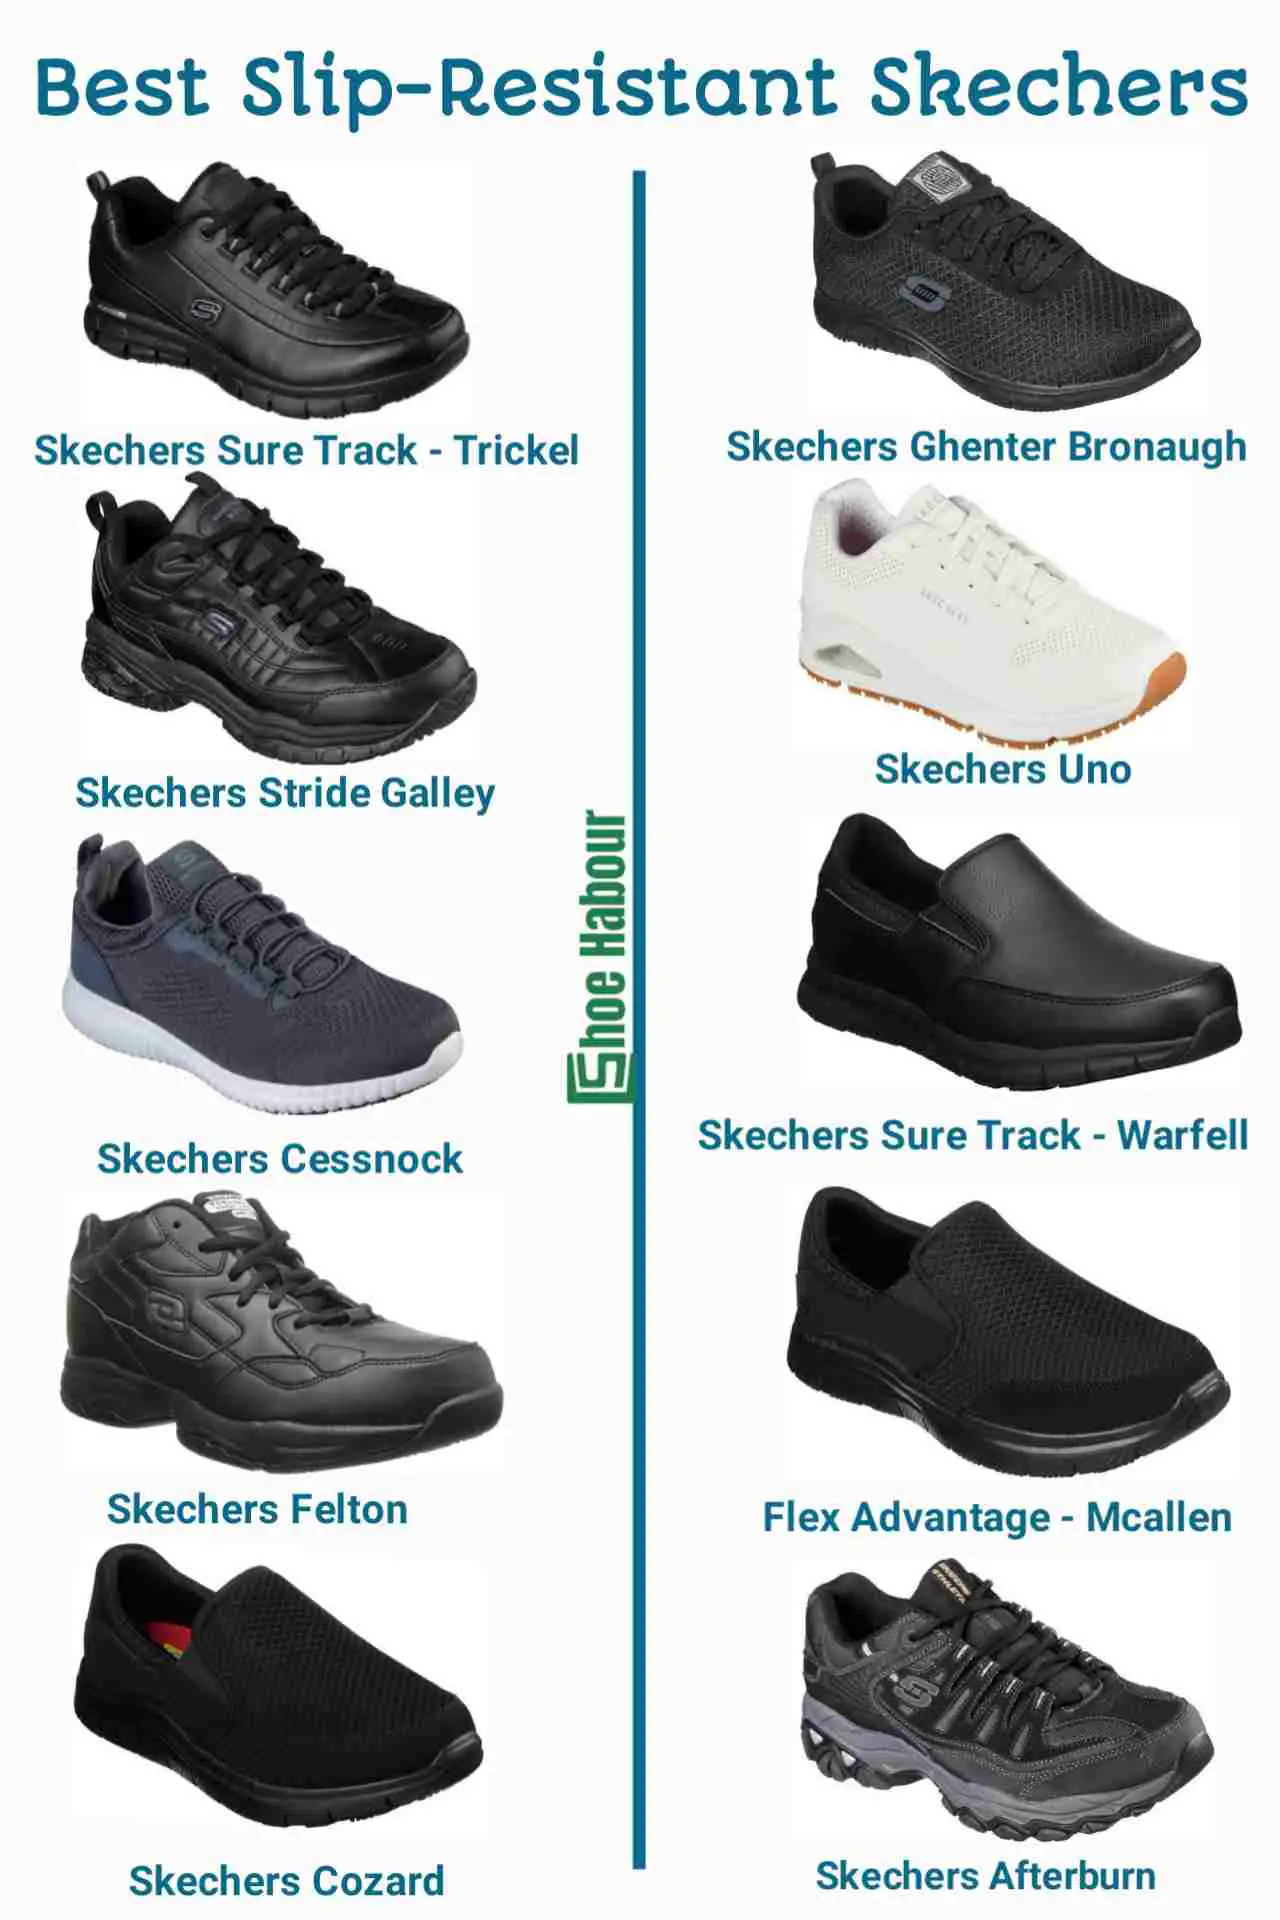 Best slip-resistant Skechers for work